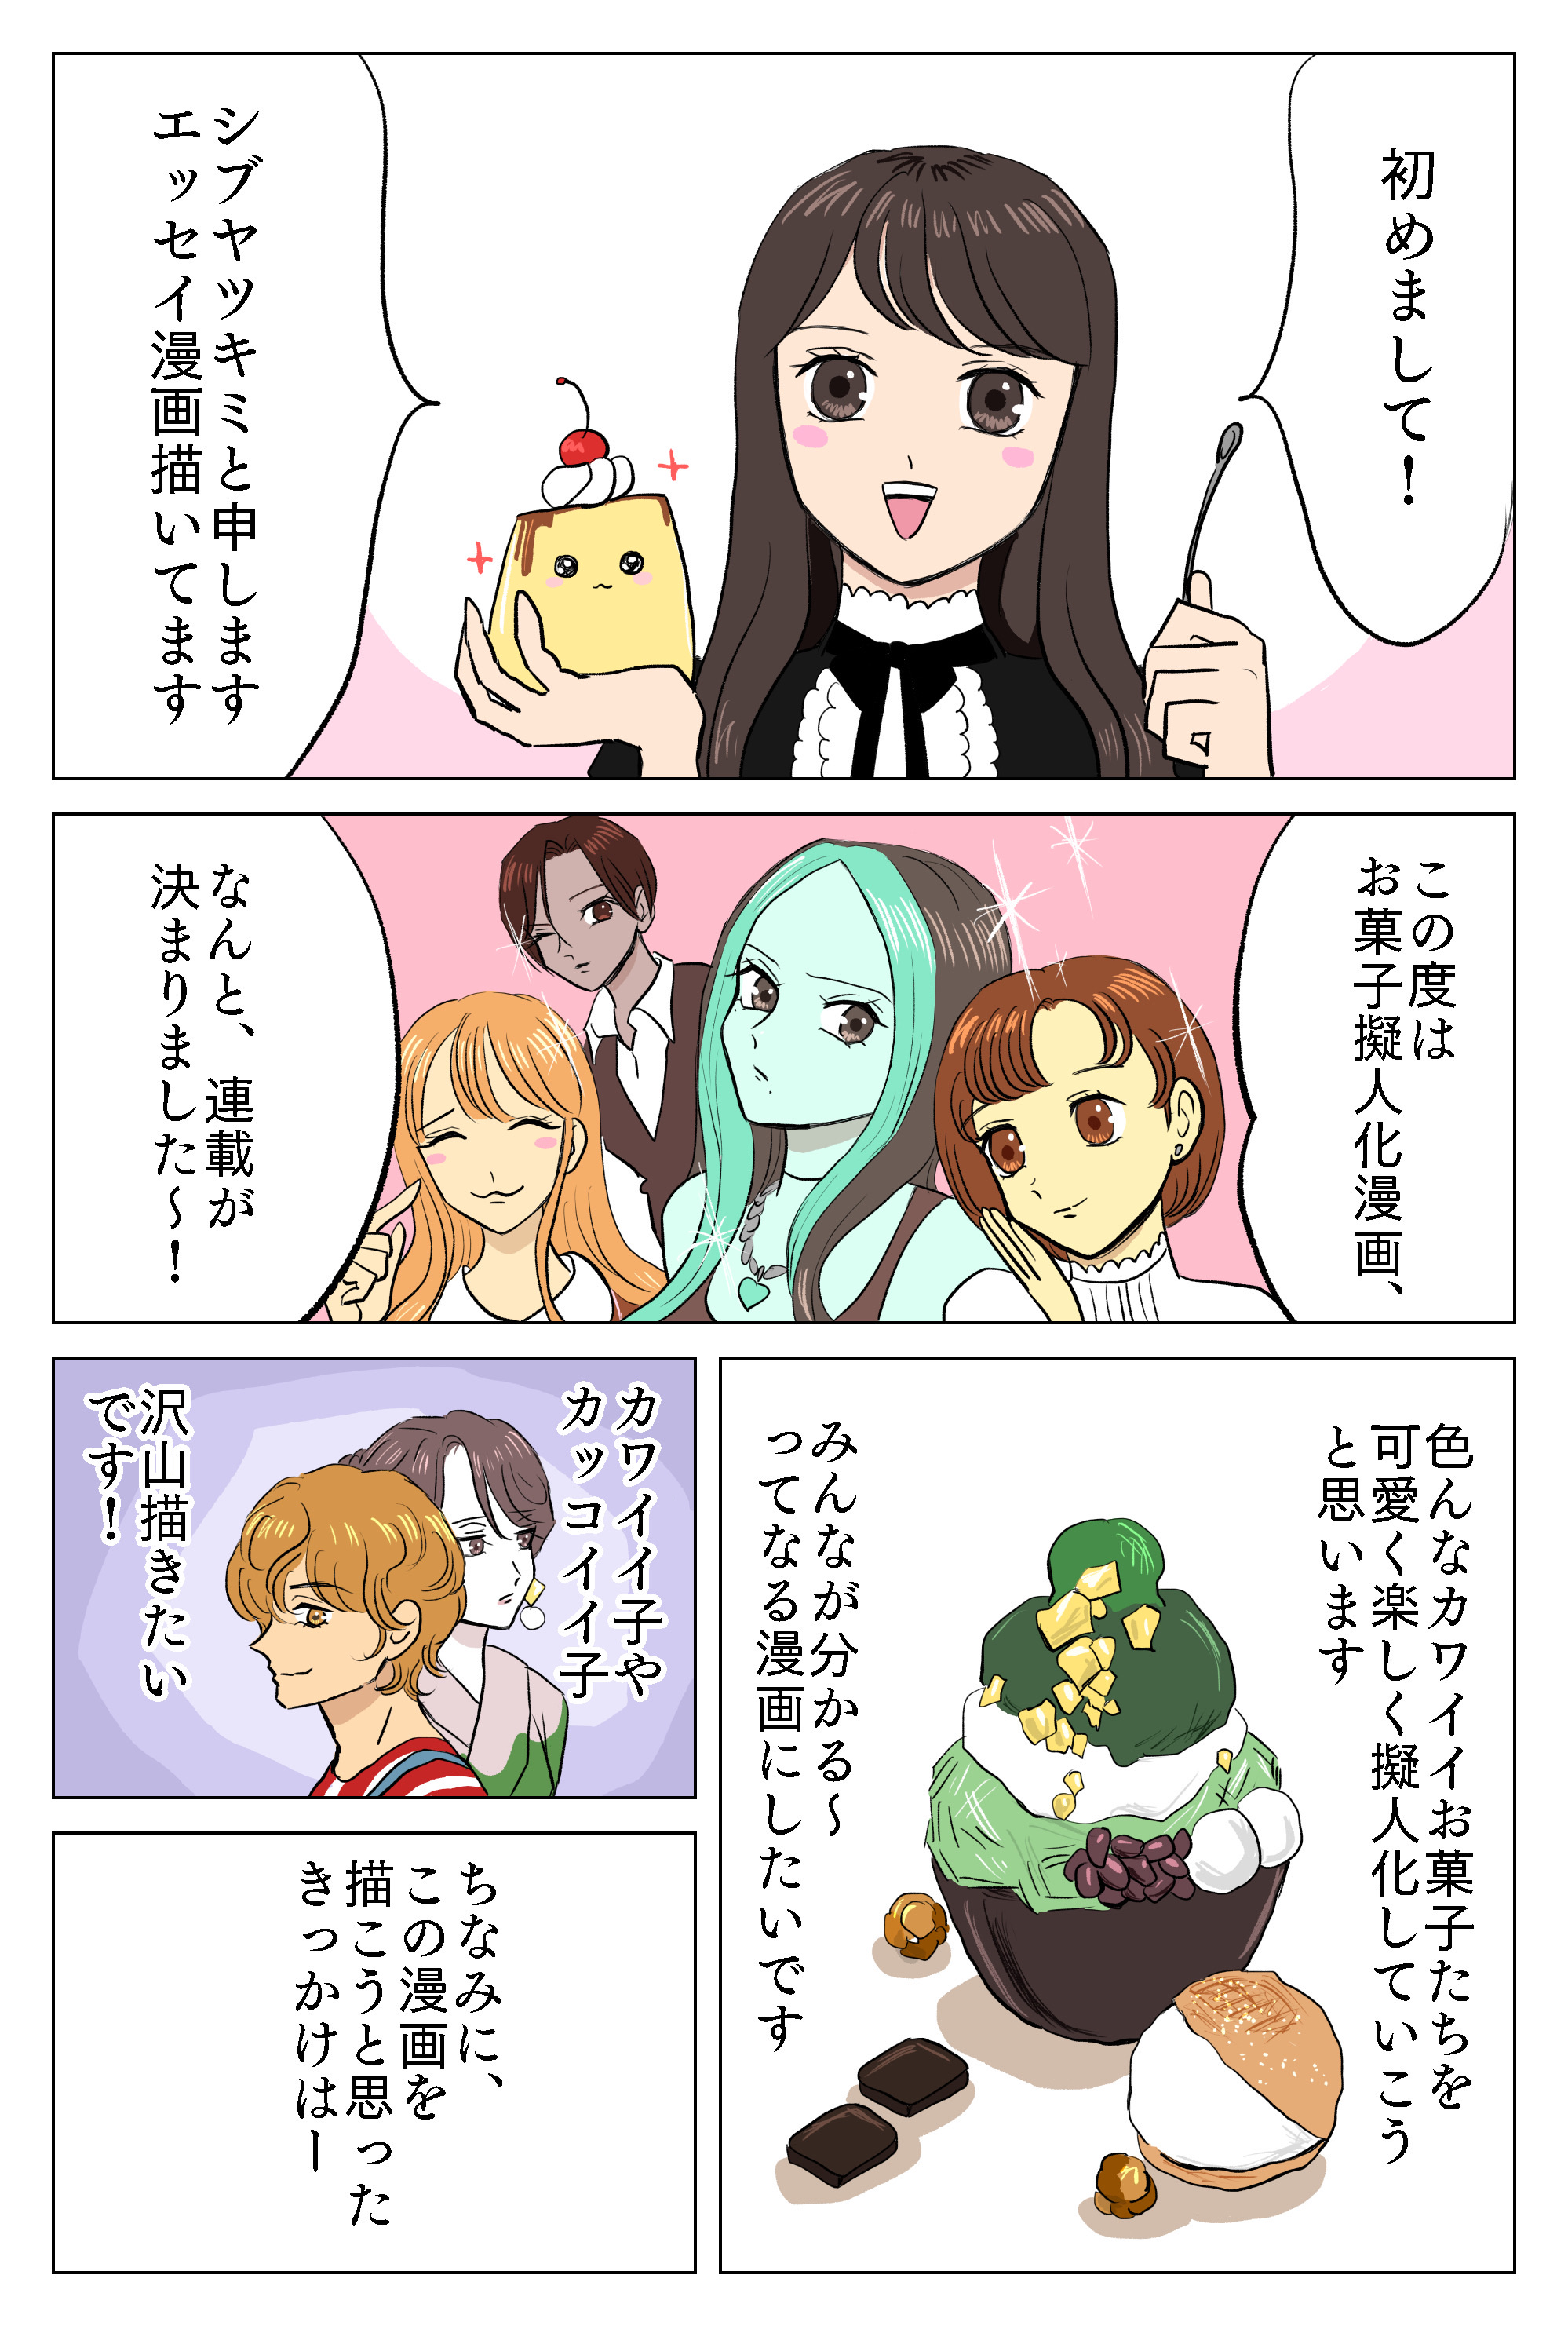 お菓子漫画第0話 シブヤツキミの陰気な独り言 Powered By ライブドアブログ